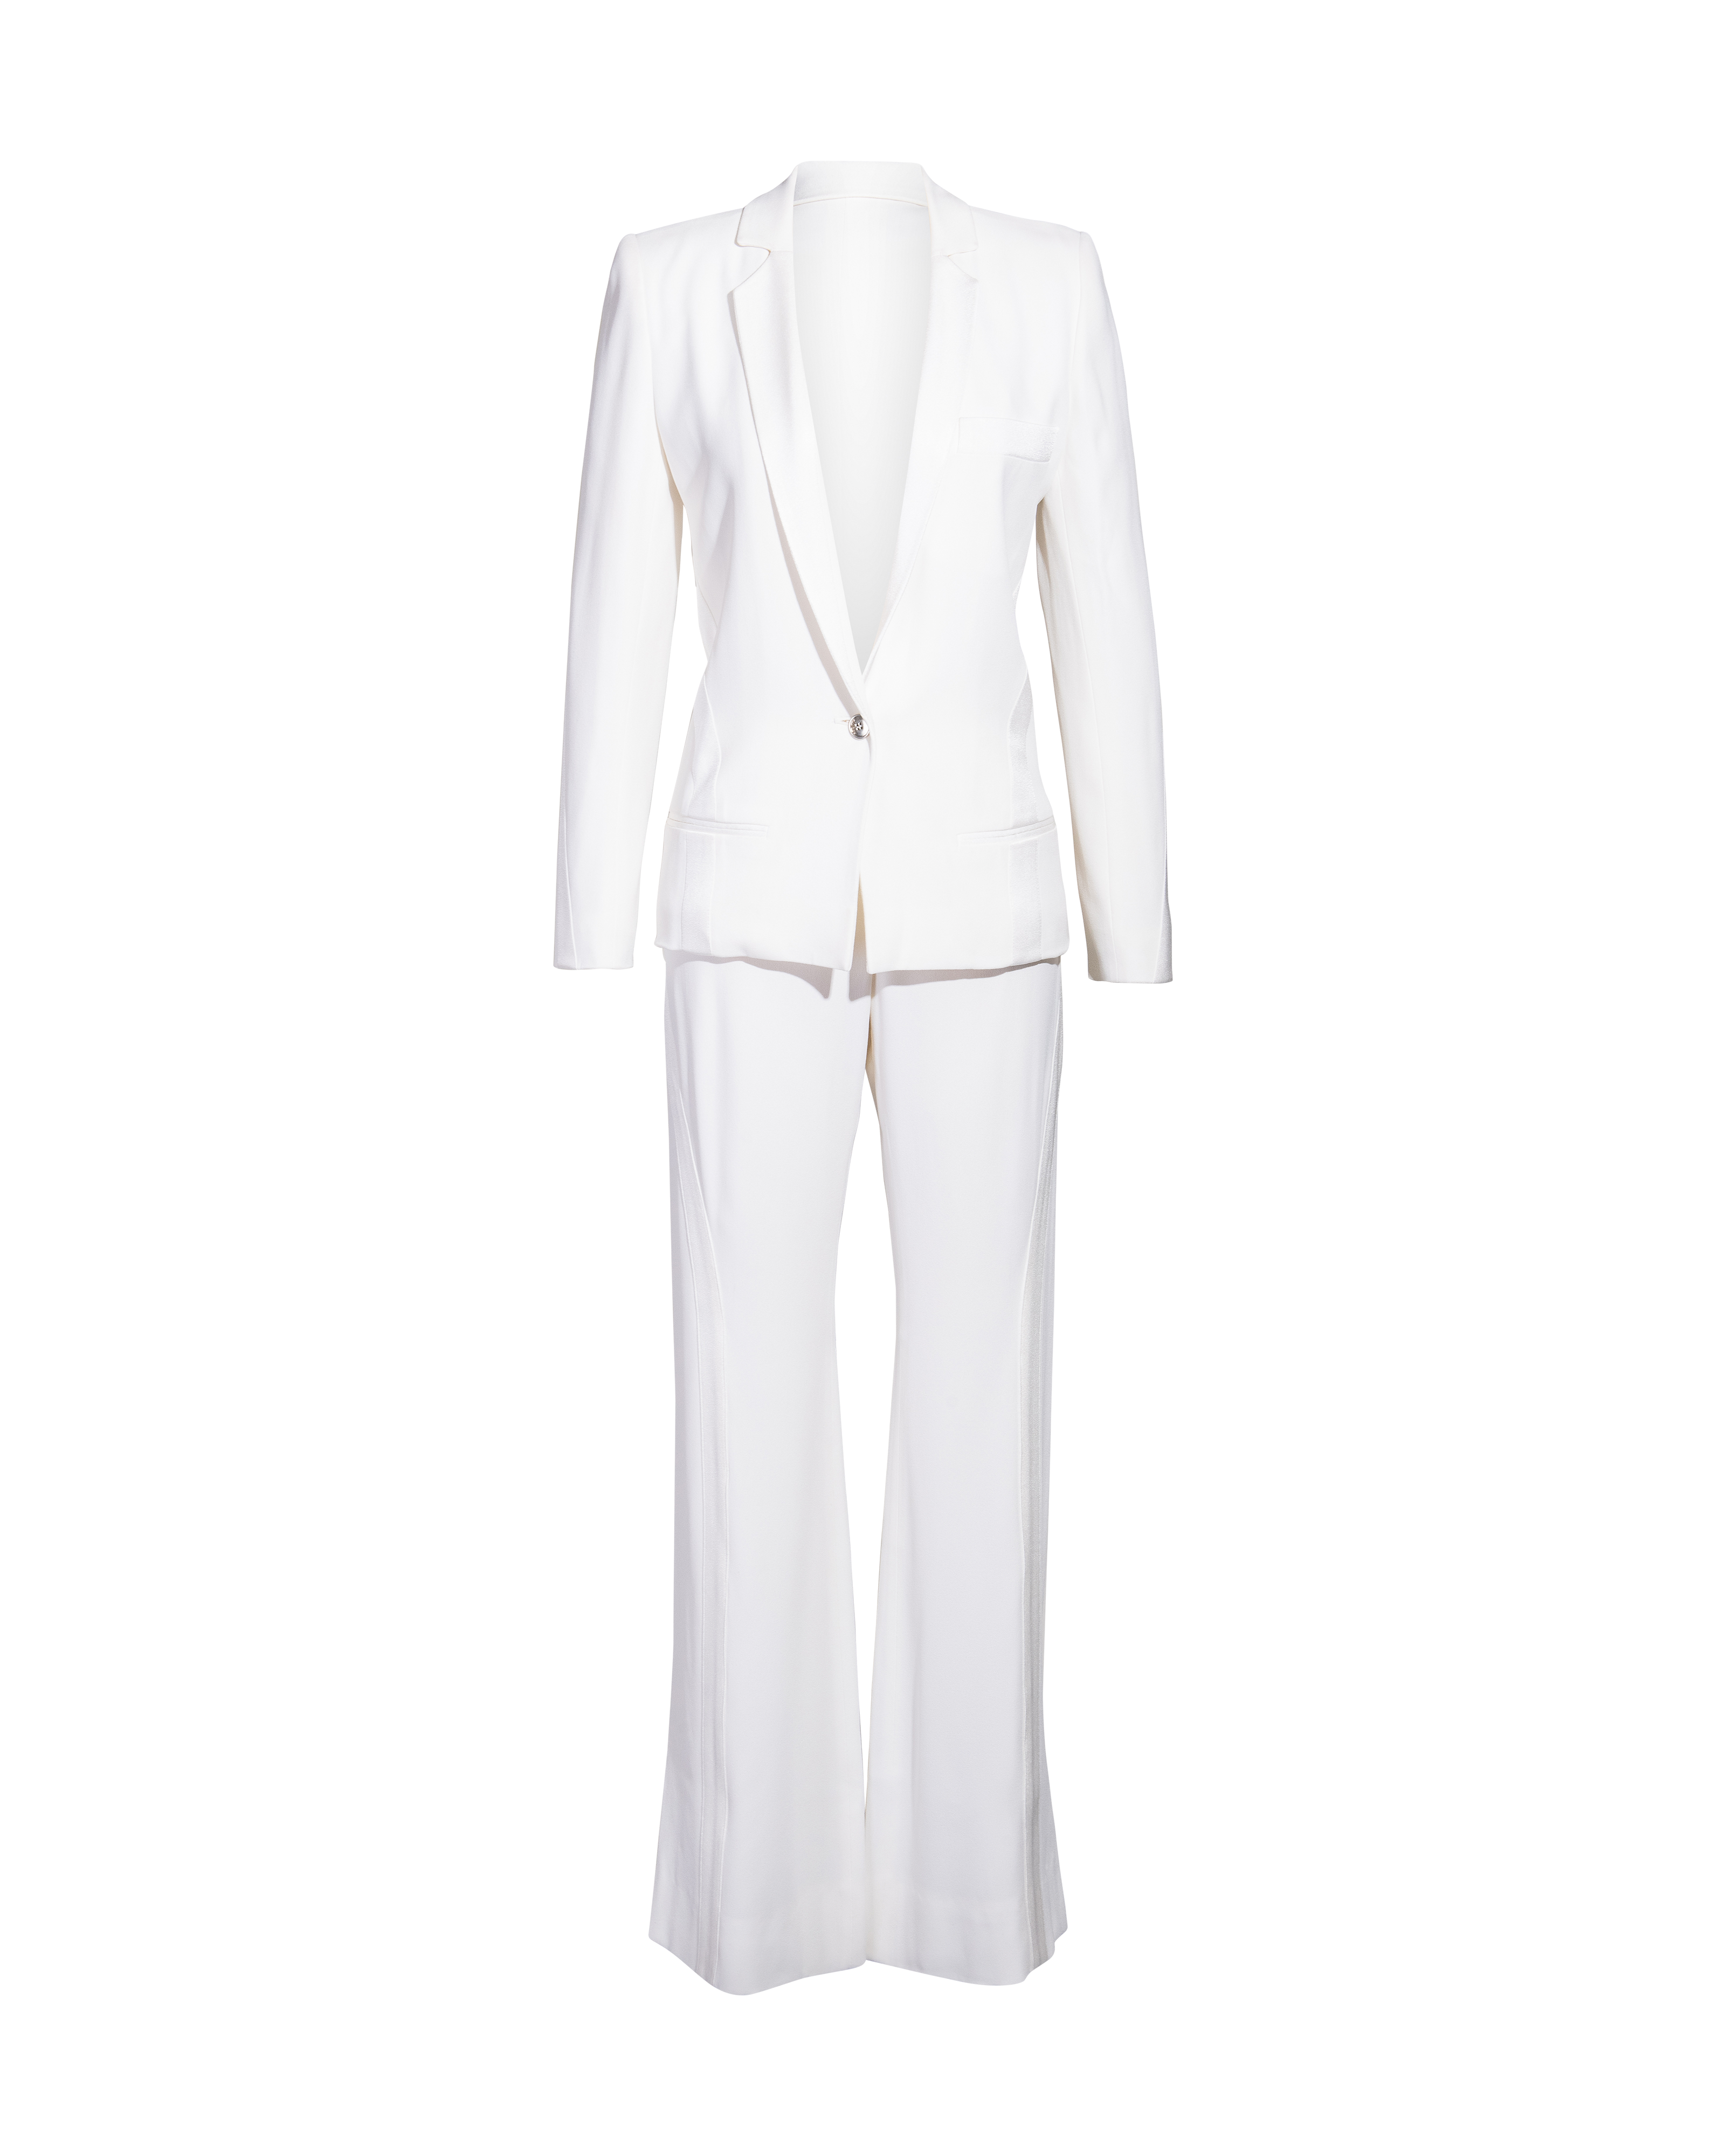 A/W 2004 White Satin Smoking Suit